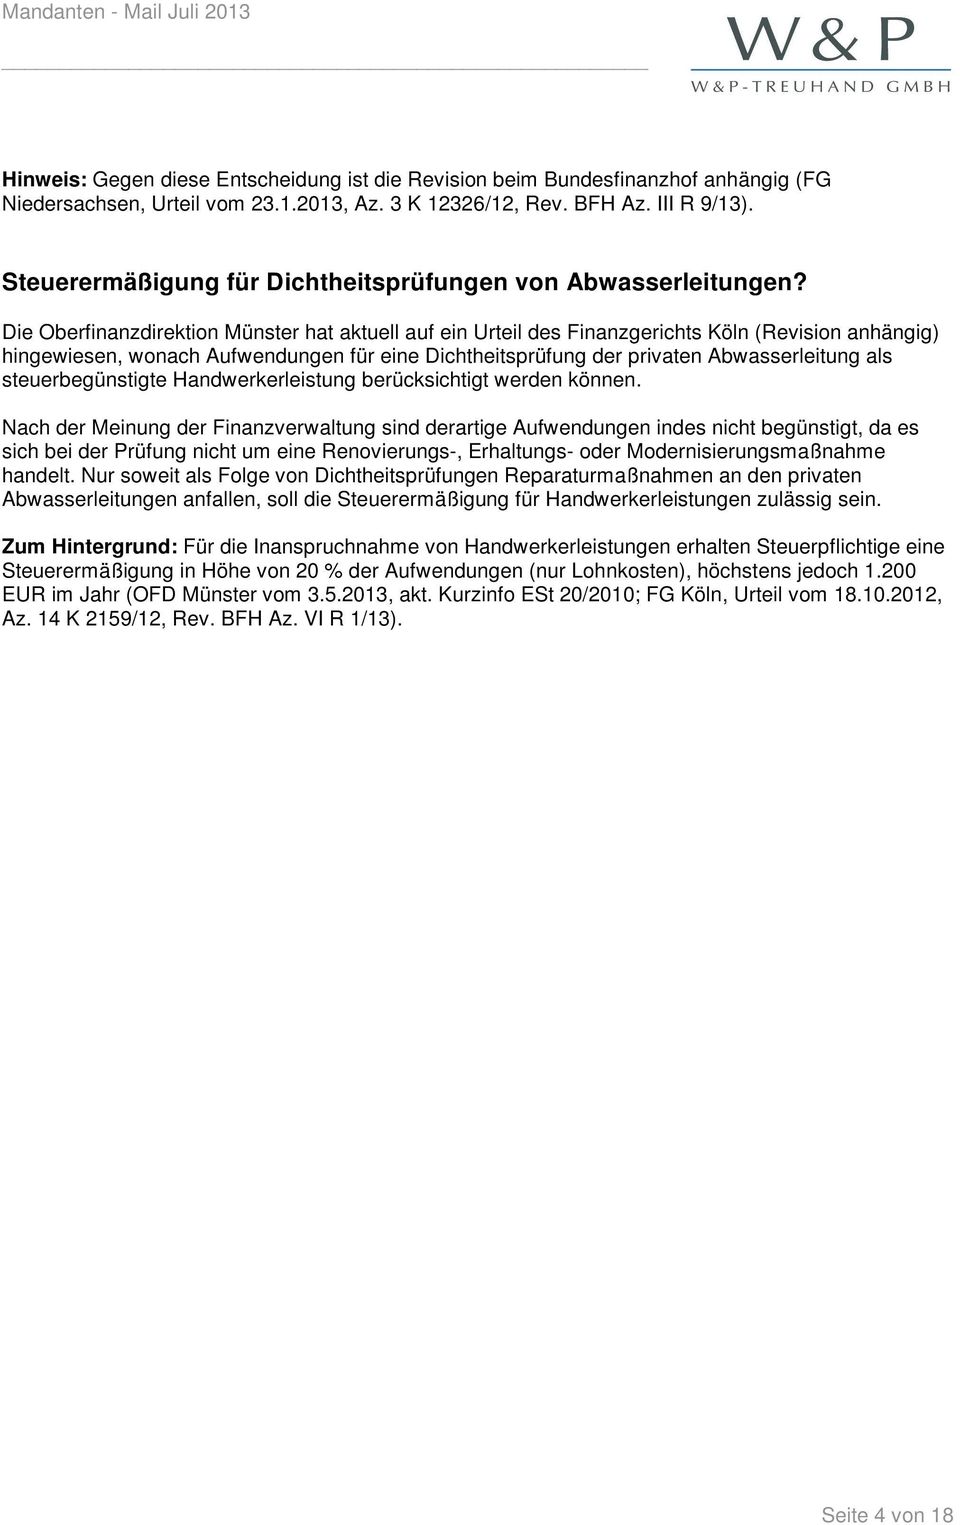 Die Oberfinanzdirektion Münster hat aktuell auf ein Urteil des Finanzgerichts Köln (Revision anhängig) hingewiesen, wonach Aufwendungen für eine Dichtheitsprüfung der privaten Abwasserleitung als